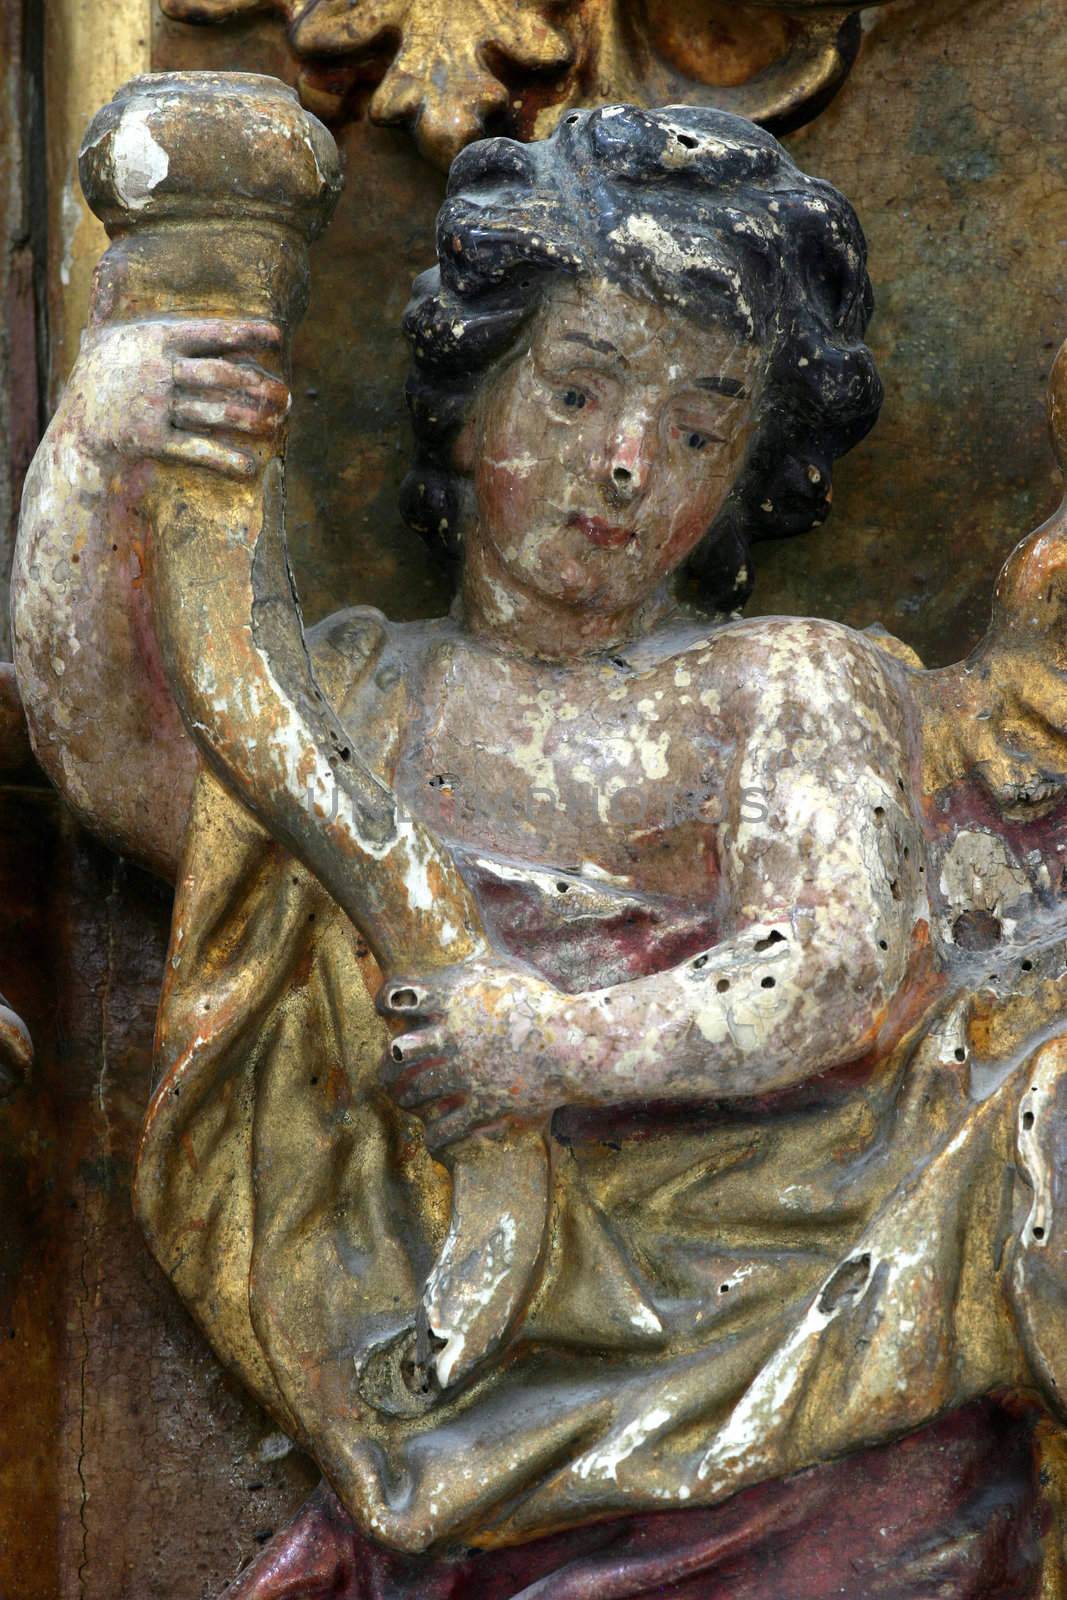 Angel on the church altar